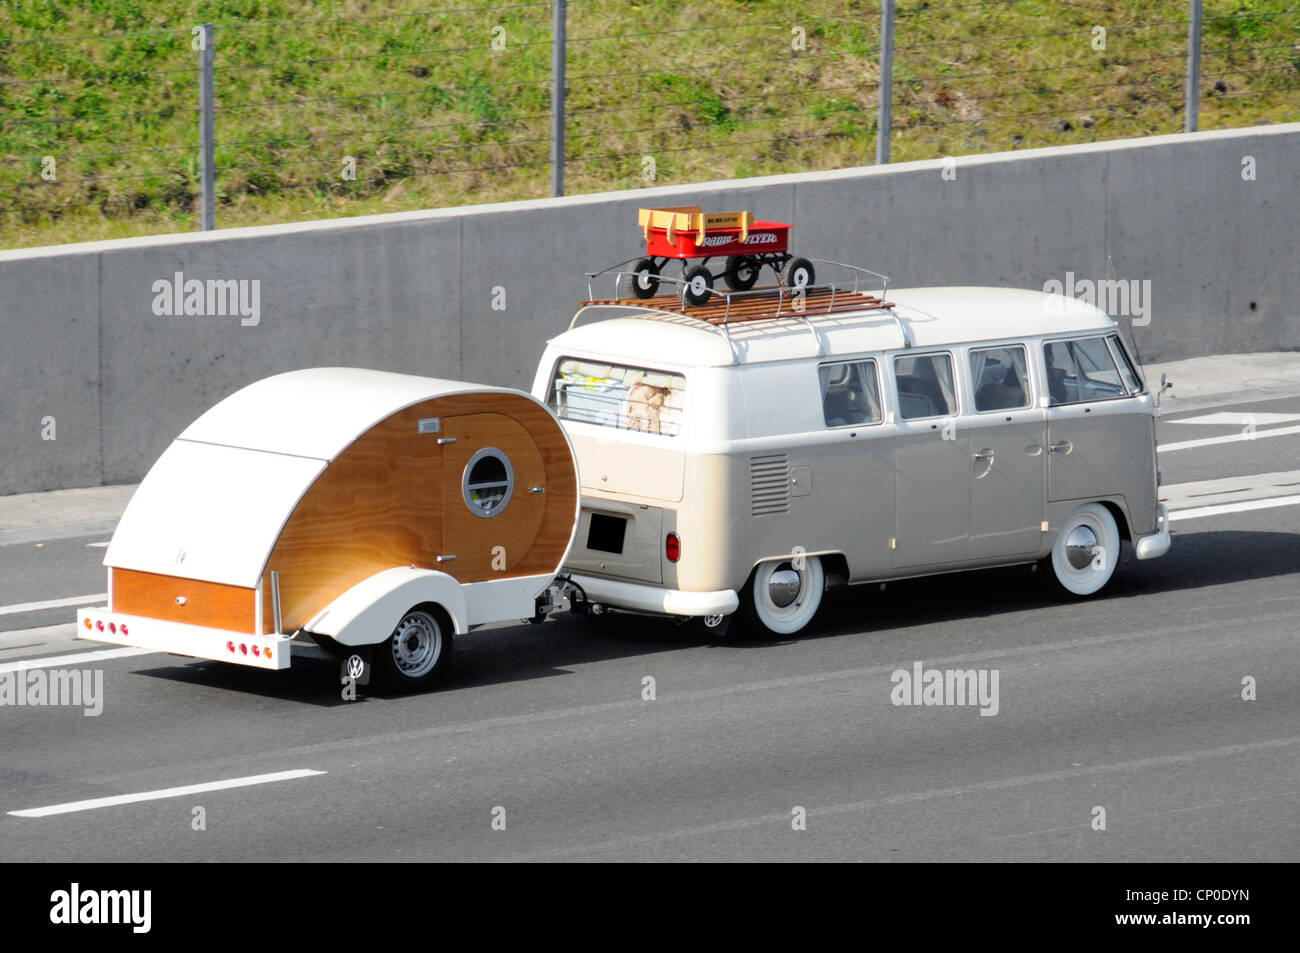 http://c8.alamy.com/comp/CP0DYN/vw-camper-van-towing-teardrop-micro-trailer-type-caravan-CP0DYN.jpg